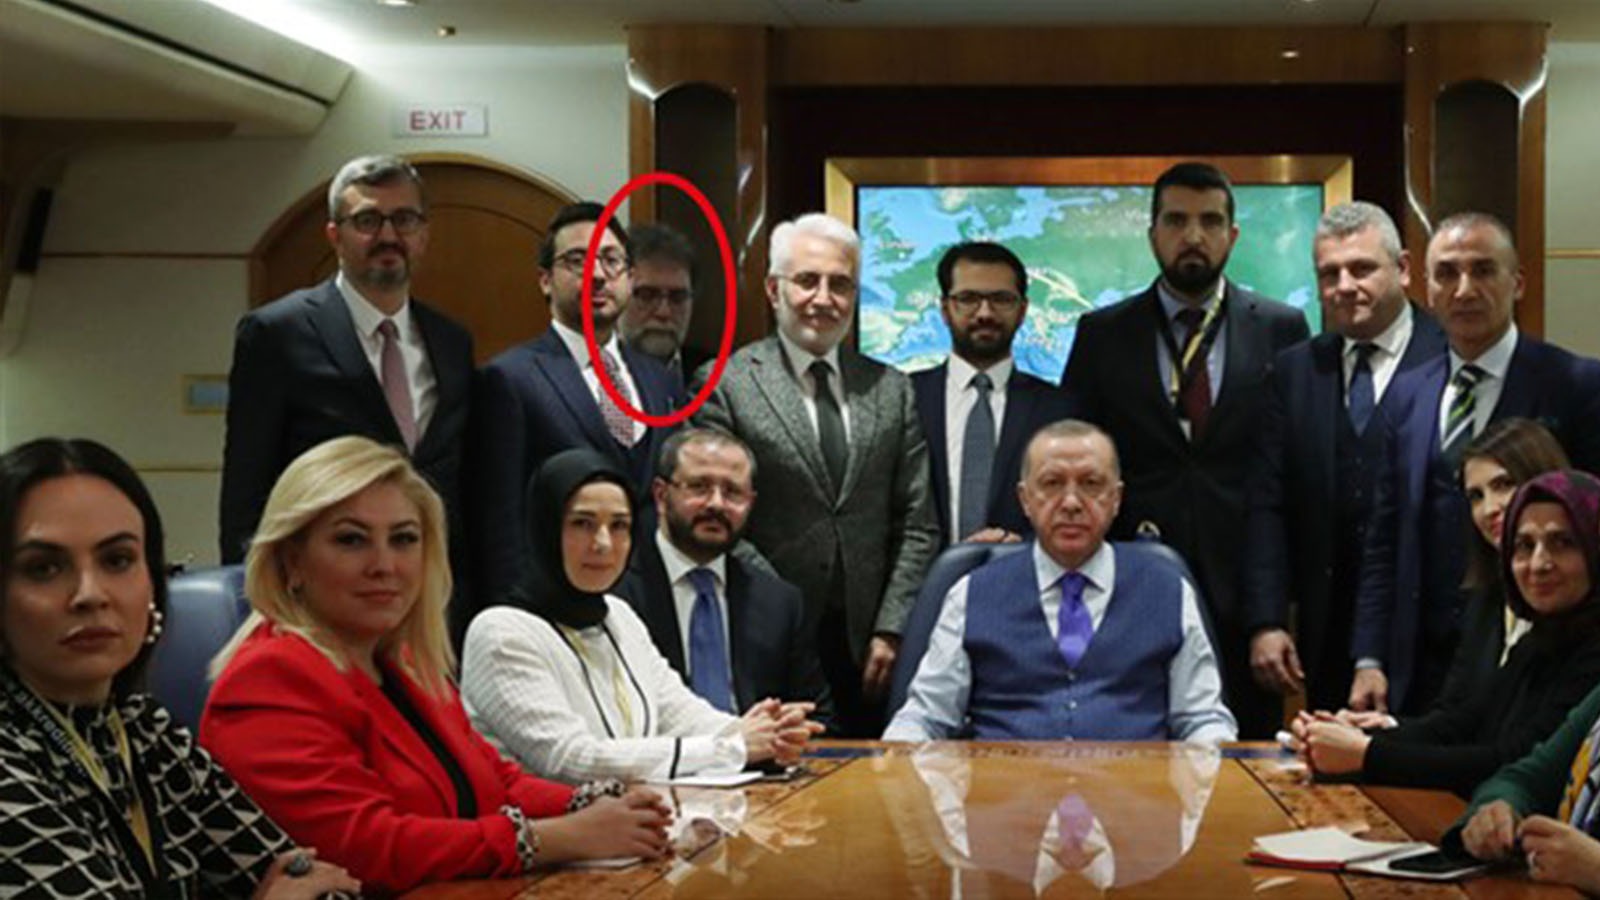 Ahmet Hakan Cumhurbaşkanı Erdoğan'ın uçağında 'saklandığı' fotoğrafına ilişkin yazdı: Nasıl kaybolduğumu ben de çözemedim